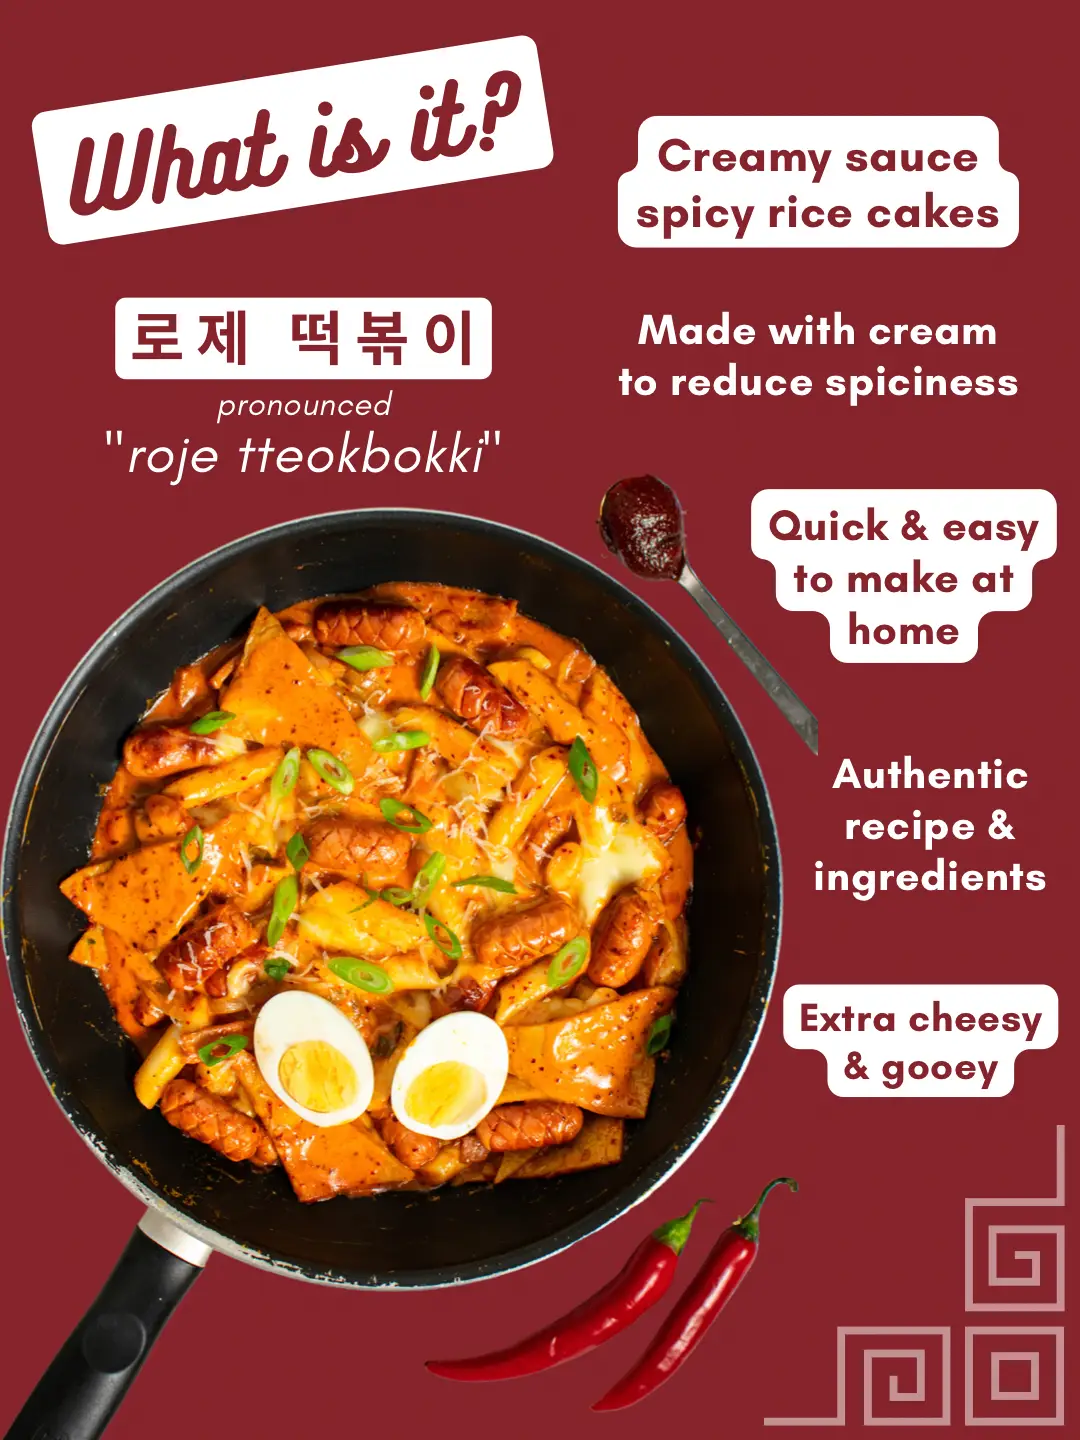 Rose Tteokbokki - A Milder Version of the Korean Rice Cake Dish